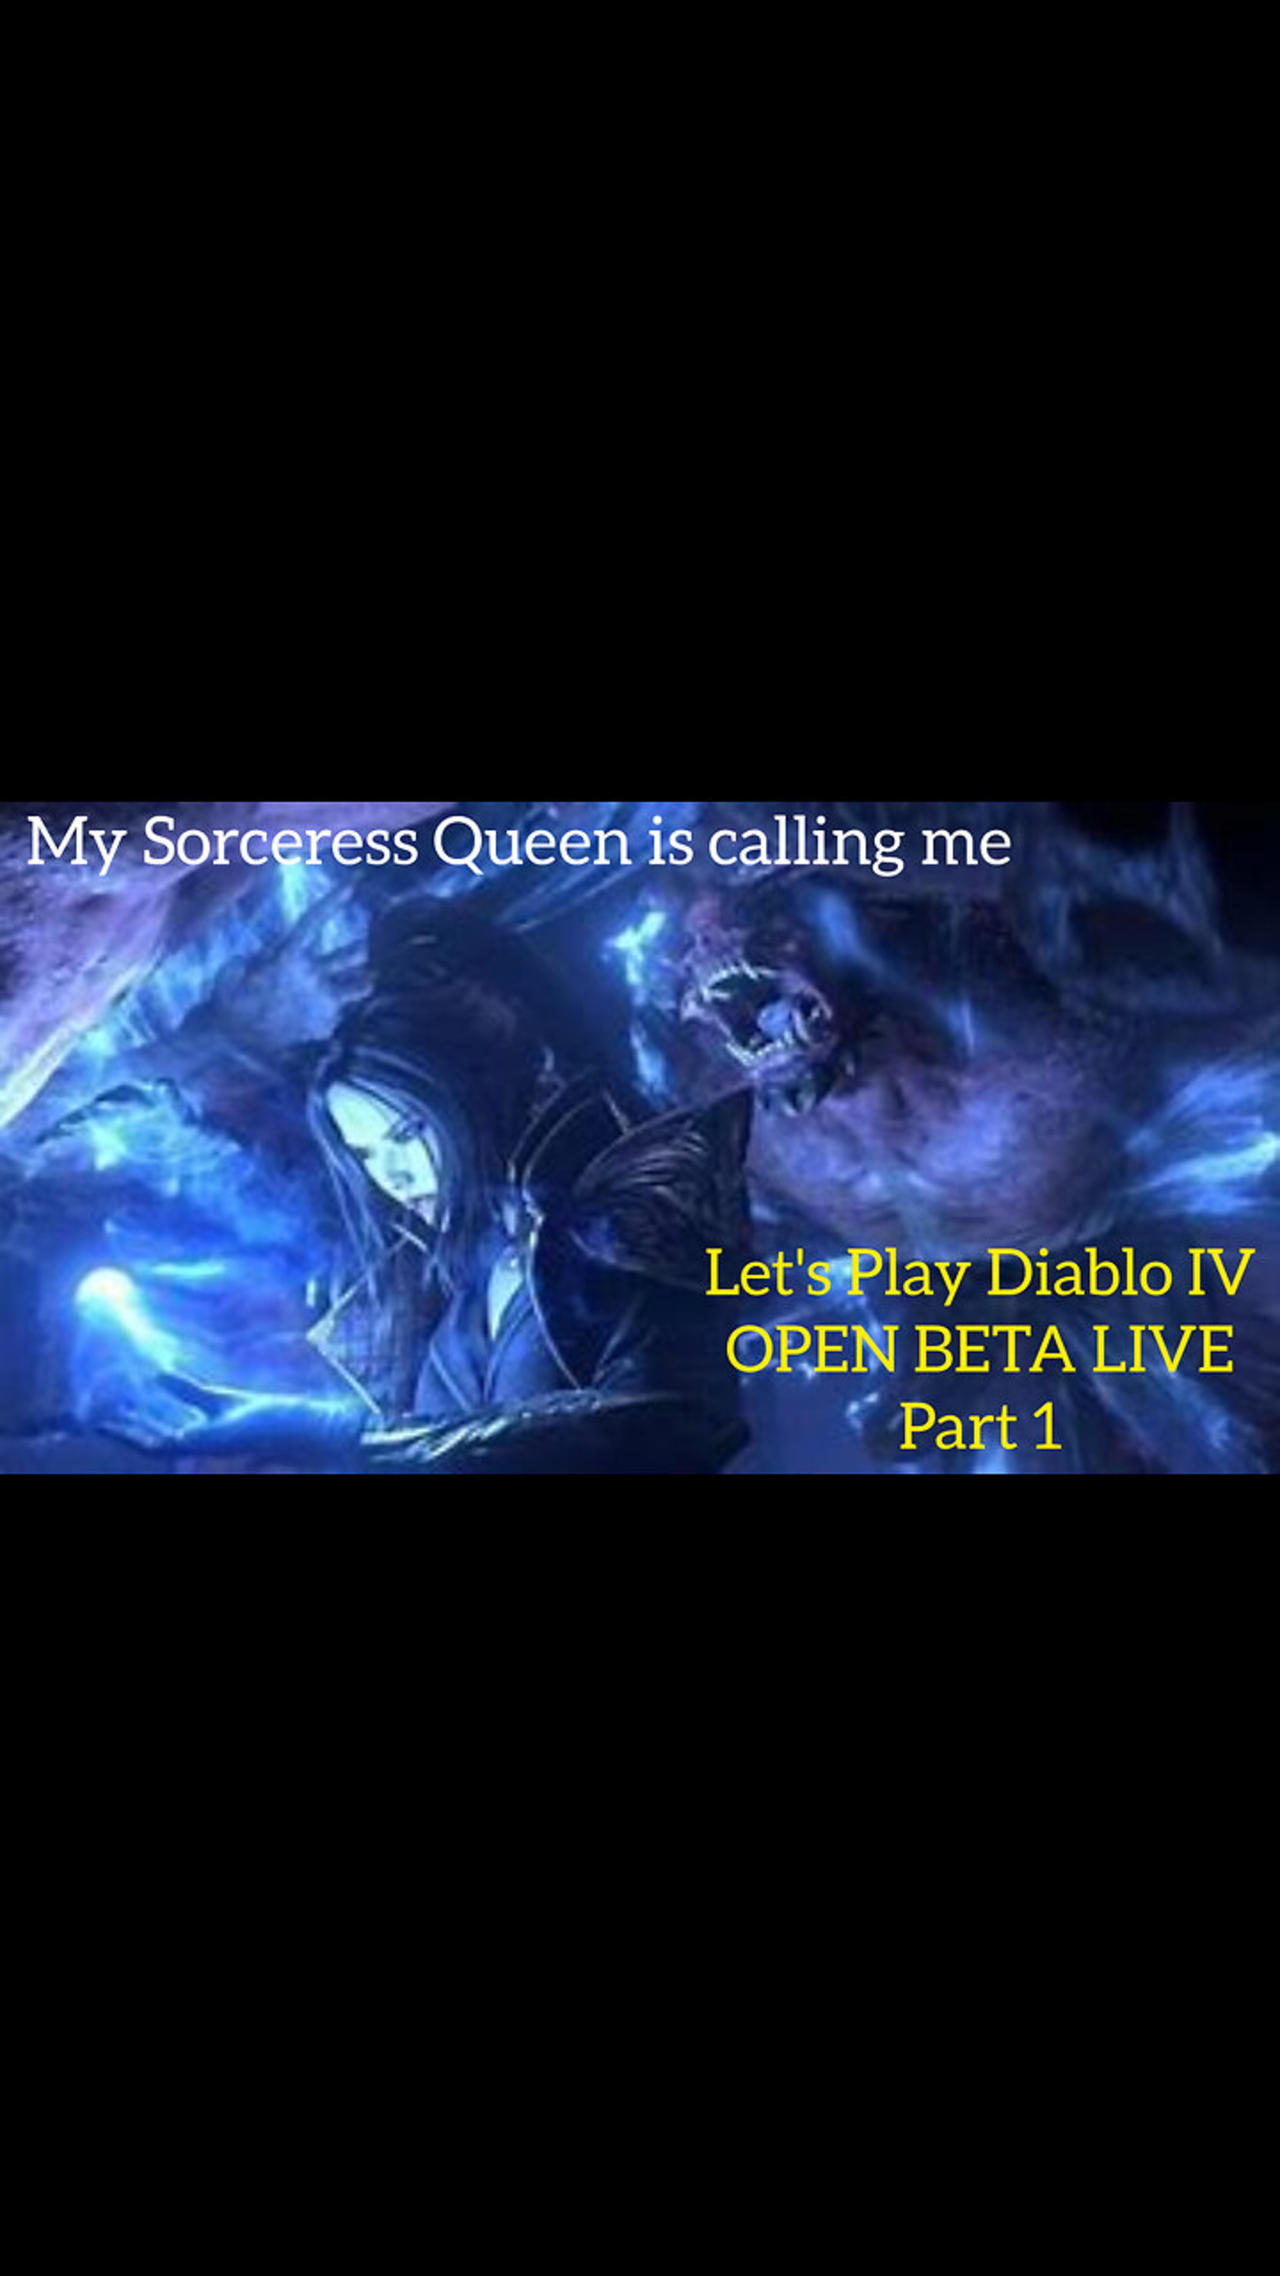 Let's Play DIablo IV Open Beta Live Part 1 - My Sorceress Queen is calling me